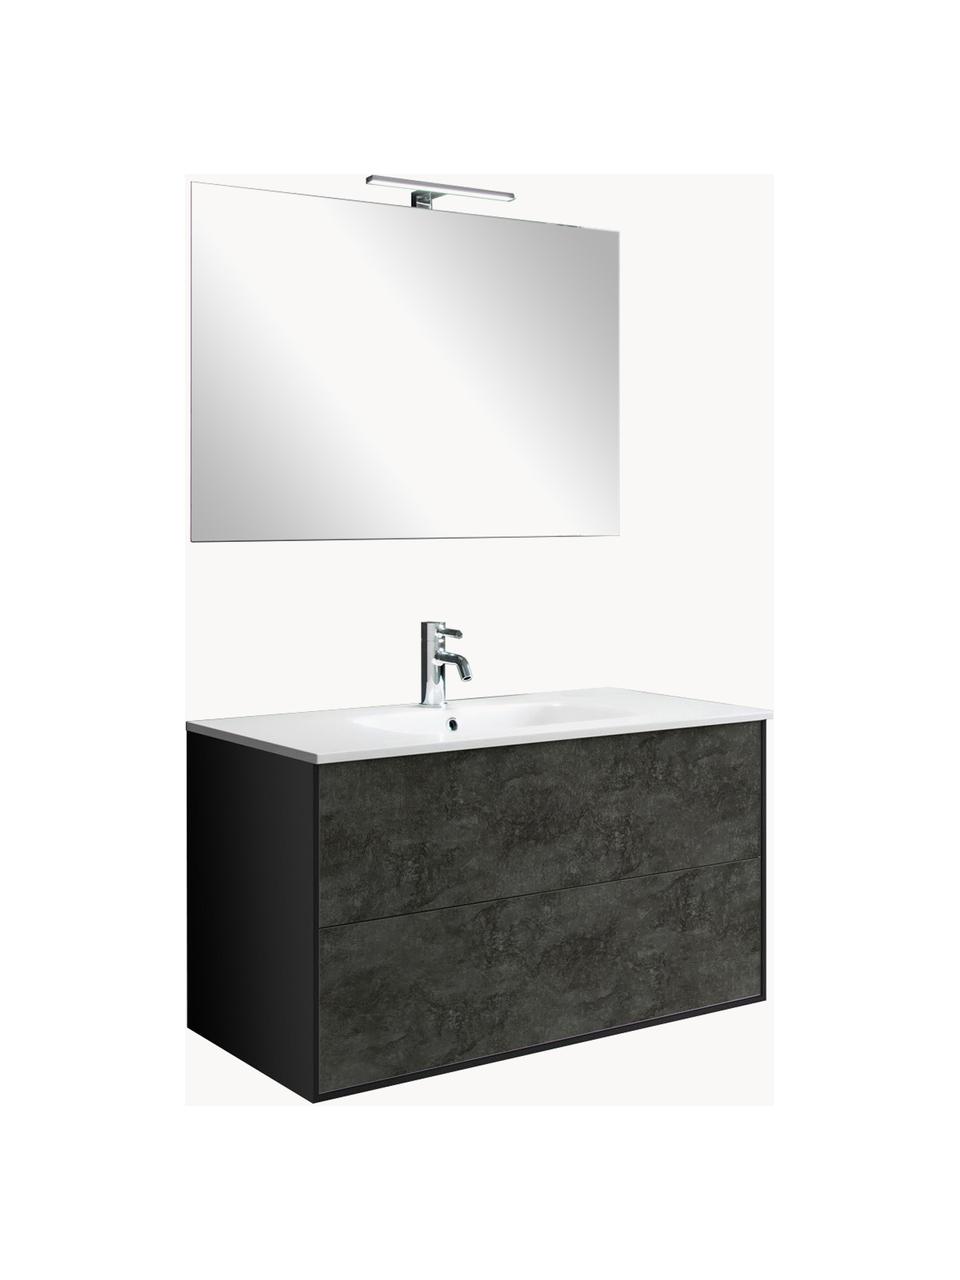 Waschtisch-Set Ago, 4-tlg., Spiegelfläche: Spiegelglas, Rückseite: ABS-Kunststoff, Beton-Optik Anthrazit, matt, B 61 x H 190 cm